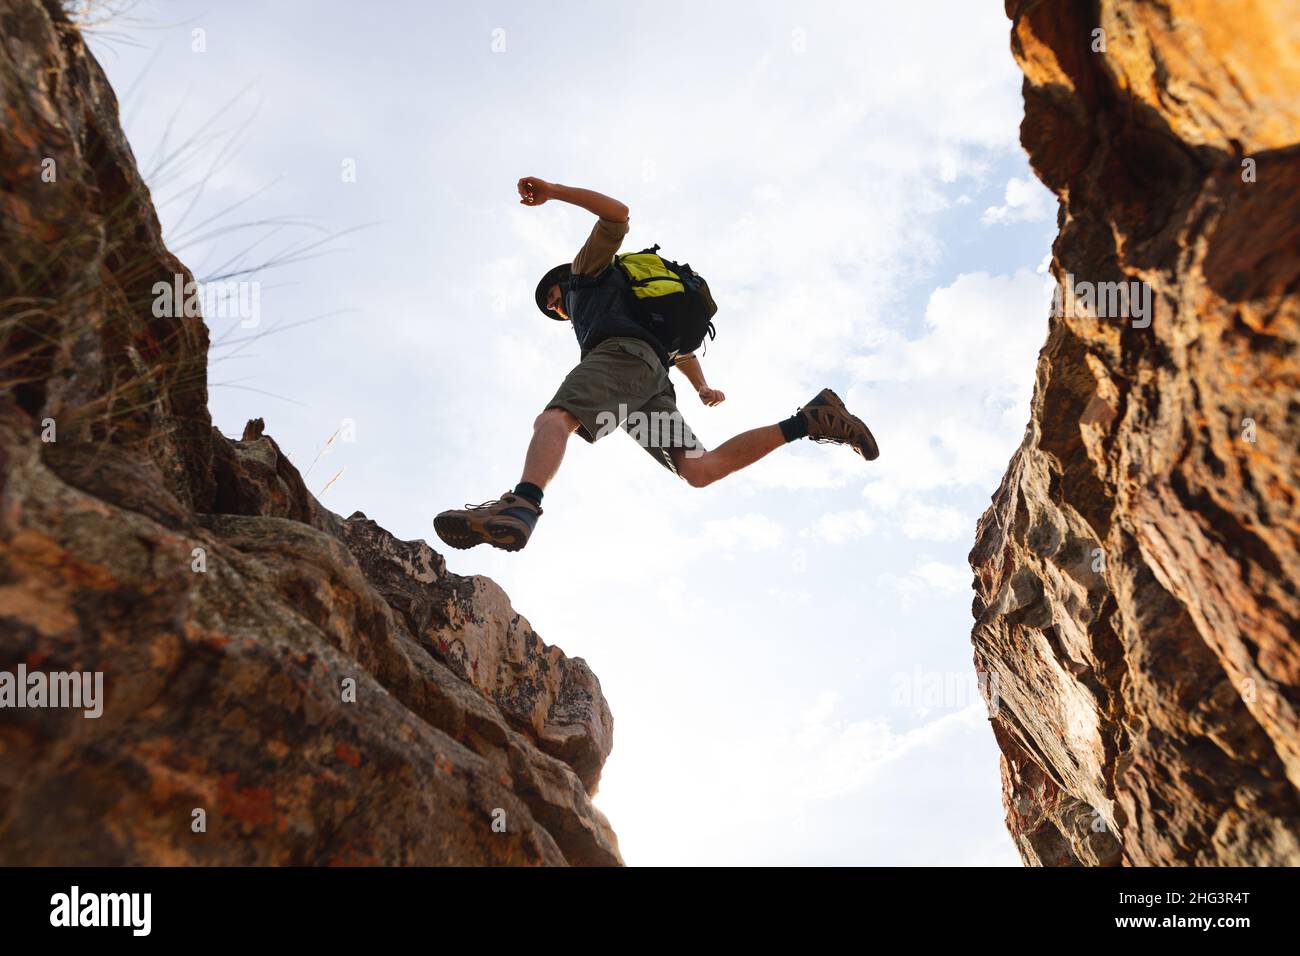 Blick aus der Tiefe auf den energischen kaukasischen Abenteurer mitten in der Luft, während er von einer felsigen Klippe springt Stockfoto